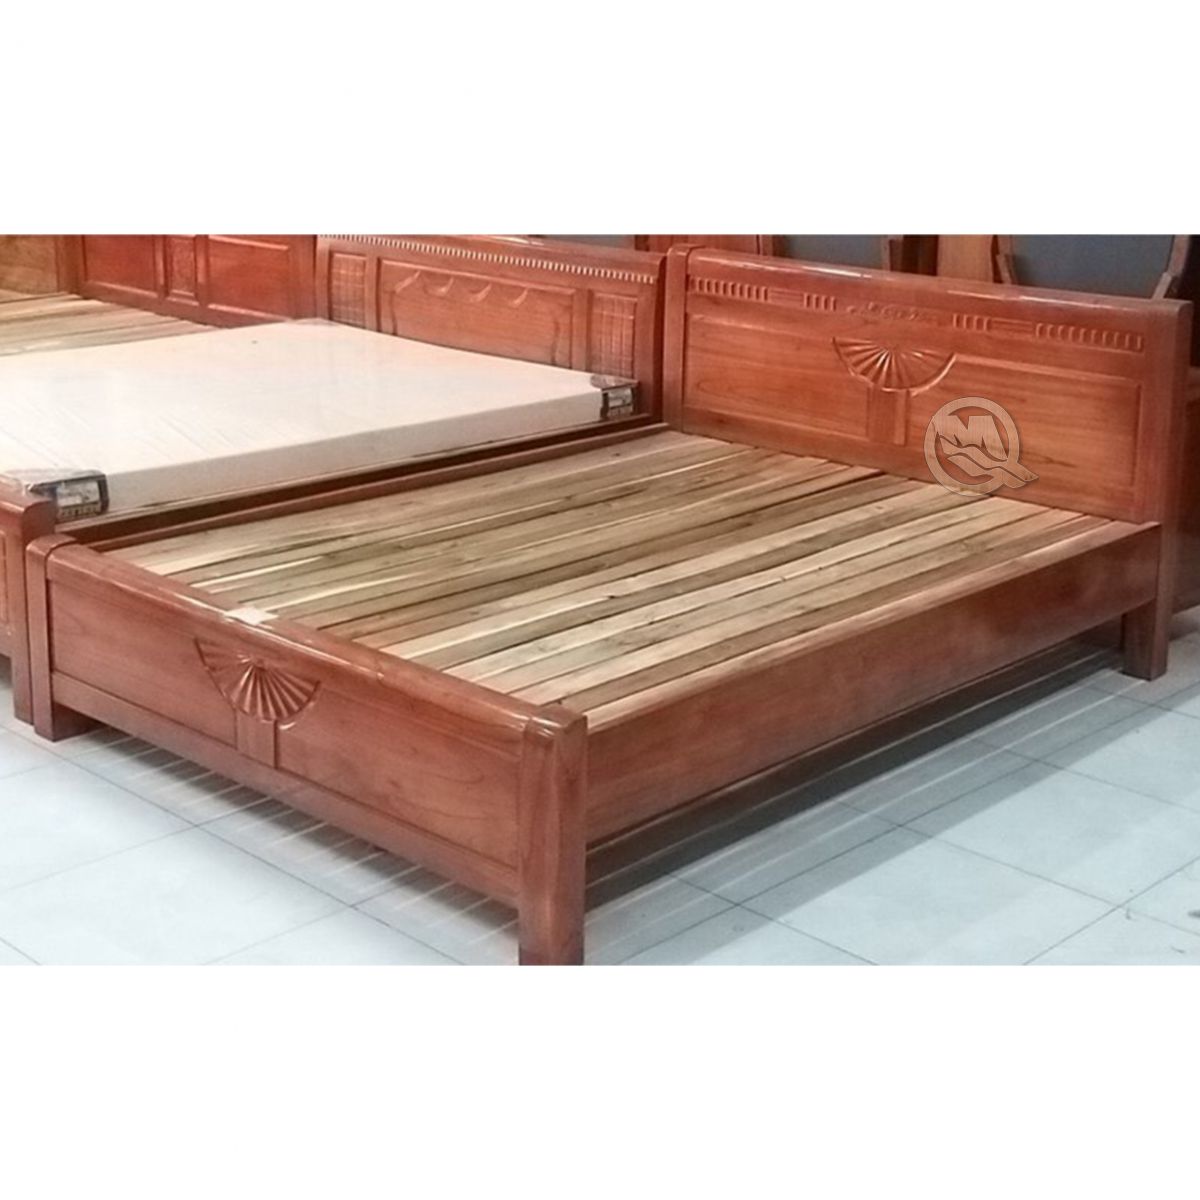 giường gỗ xoan đào kiểu quạt - SP706